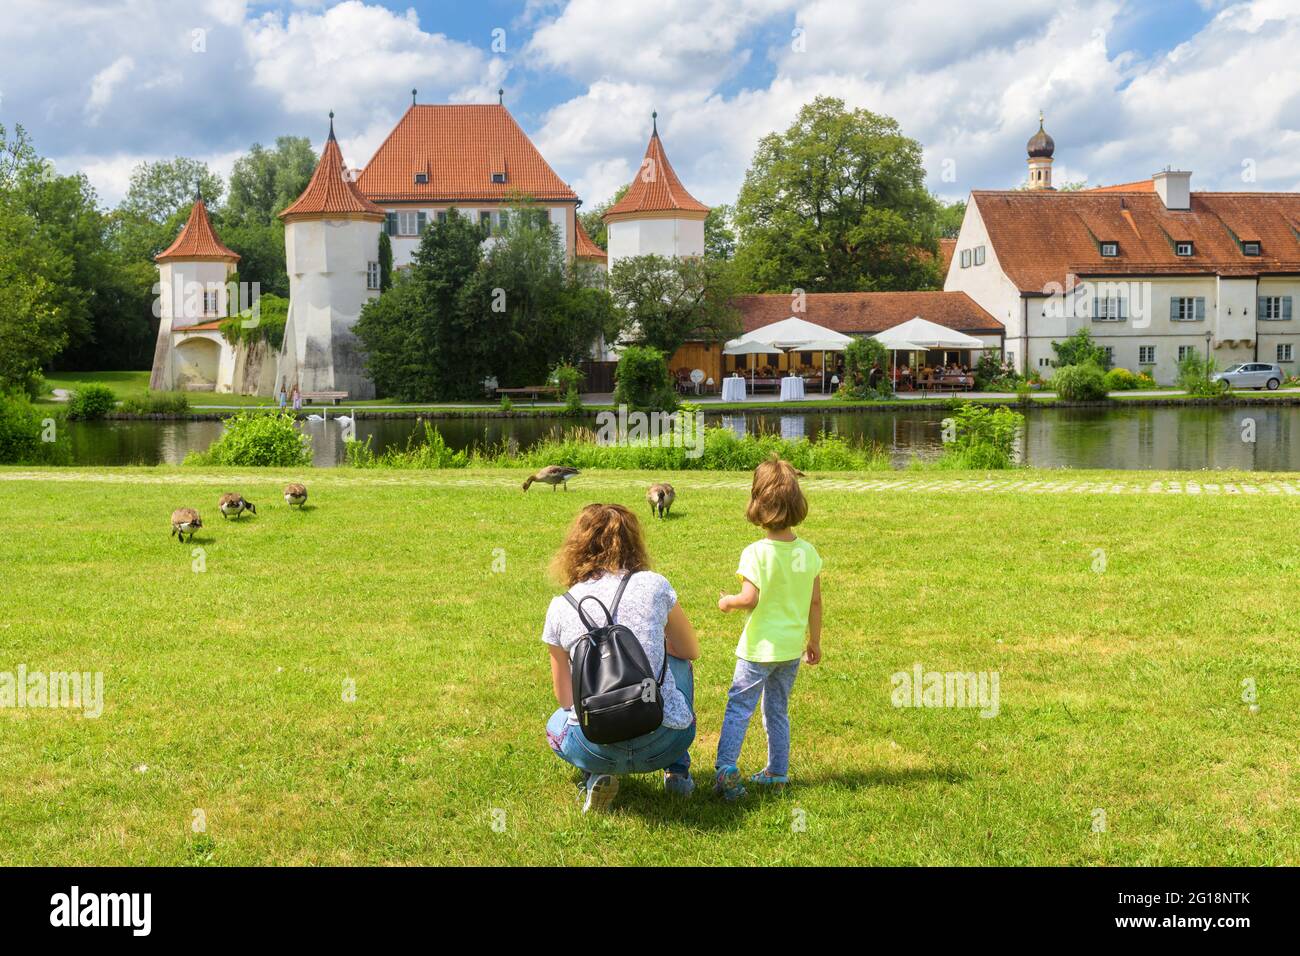 Kinderspaziergänge auf grüner Wiese am alten Schloss Blutenburg, München, Bayern, Deutschland. Familie im Stadtpark im Sommer. Dieser Ort ist Touristenattraktion von Munic Stockfoto